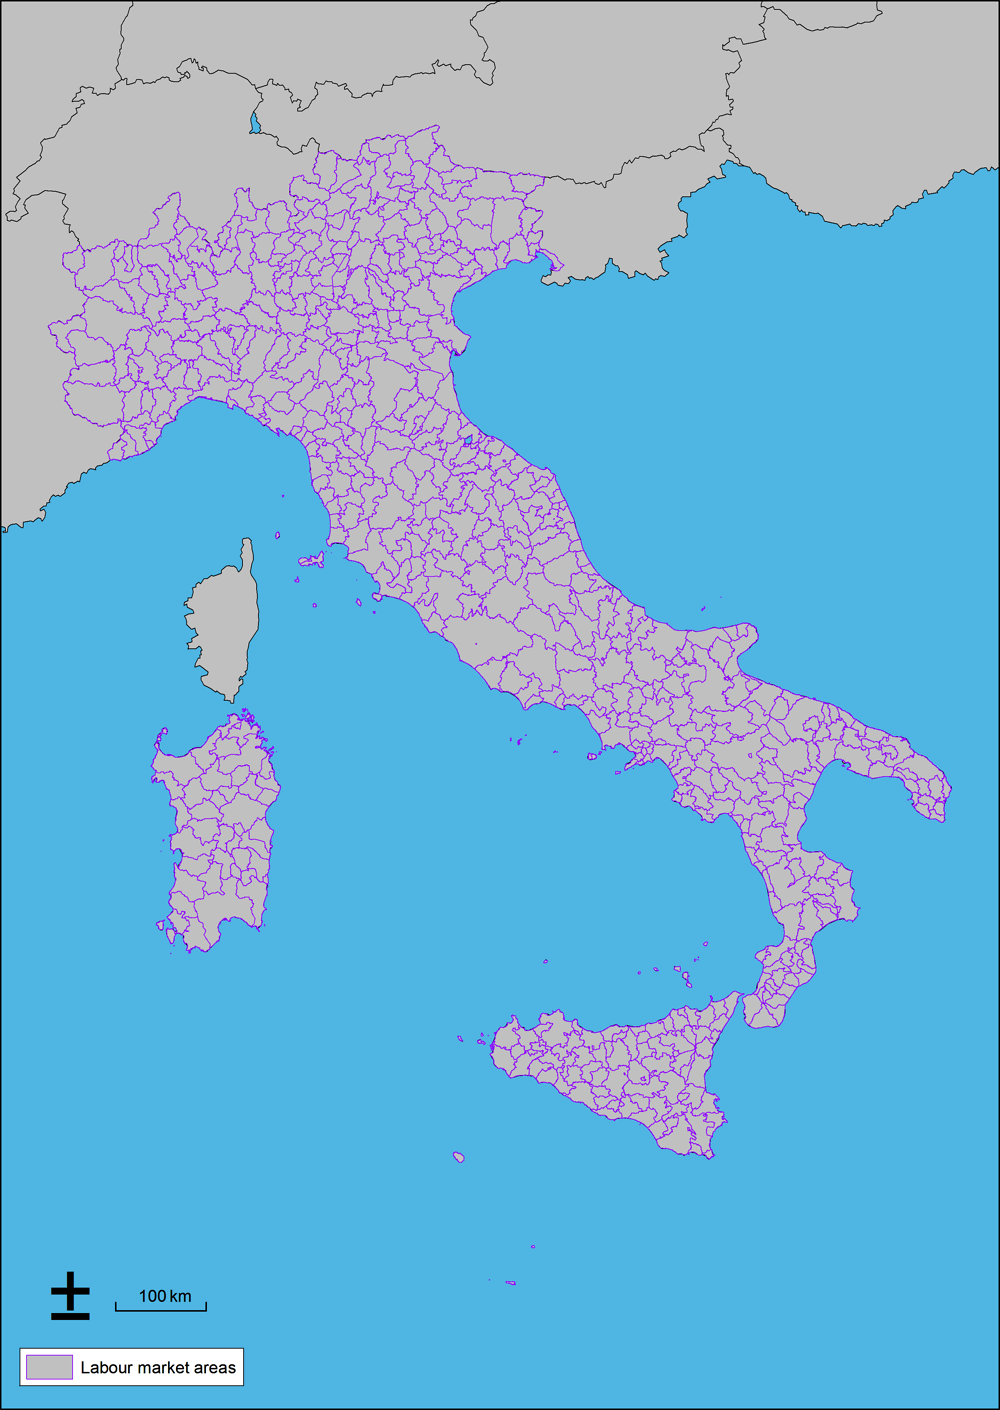 Figure 3.4. Italian LMAs